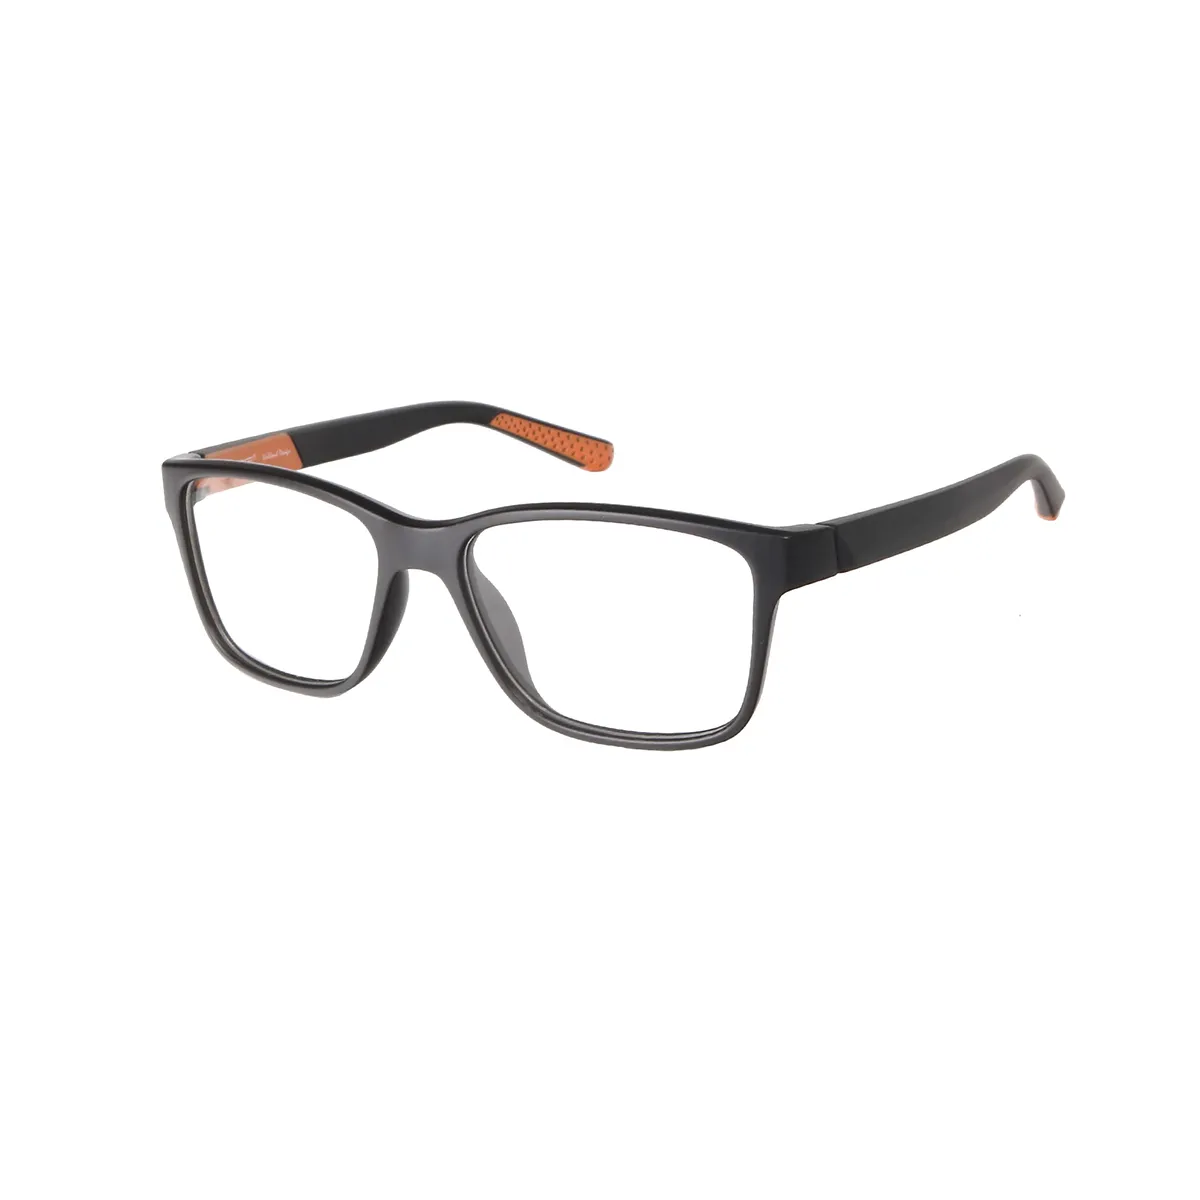 Jamison - Square Black-Orange Glasses for Men